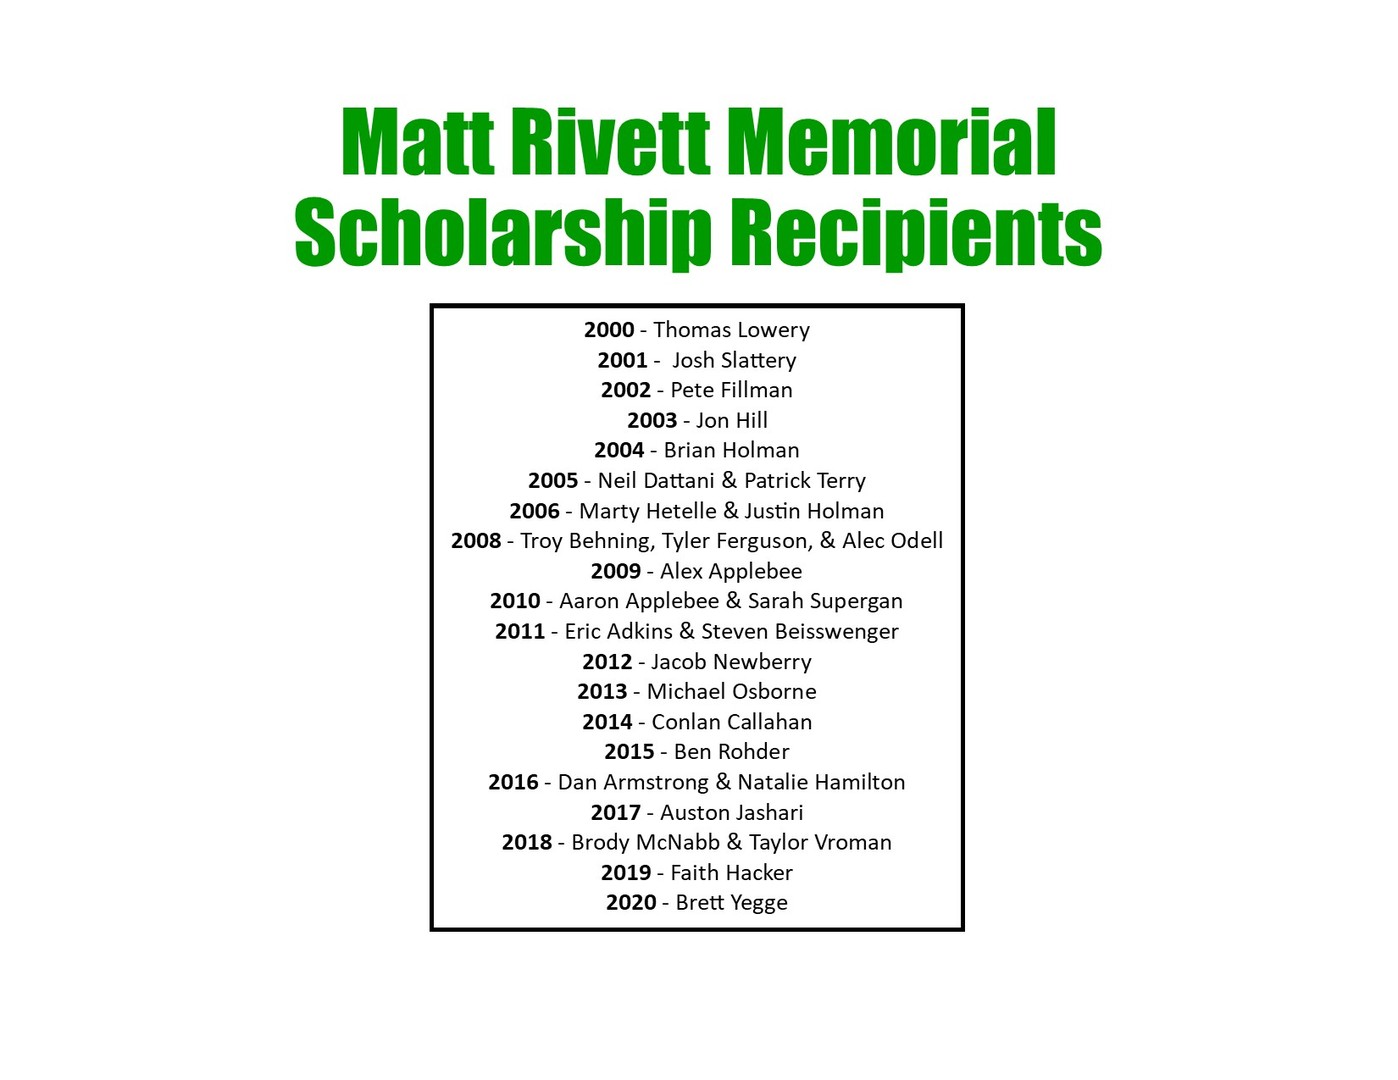 Matt Rivett Memorial Scholarship Recipents